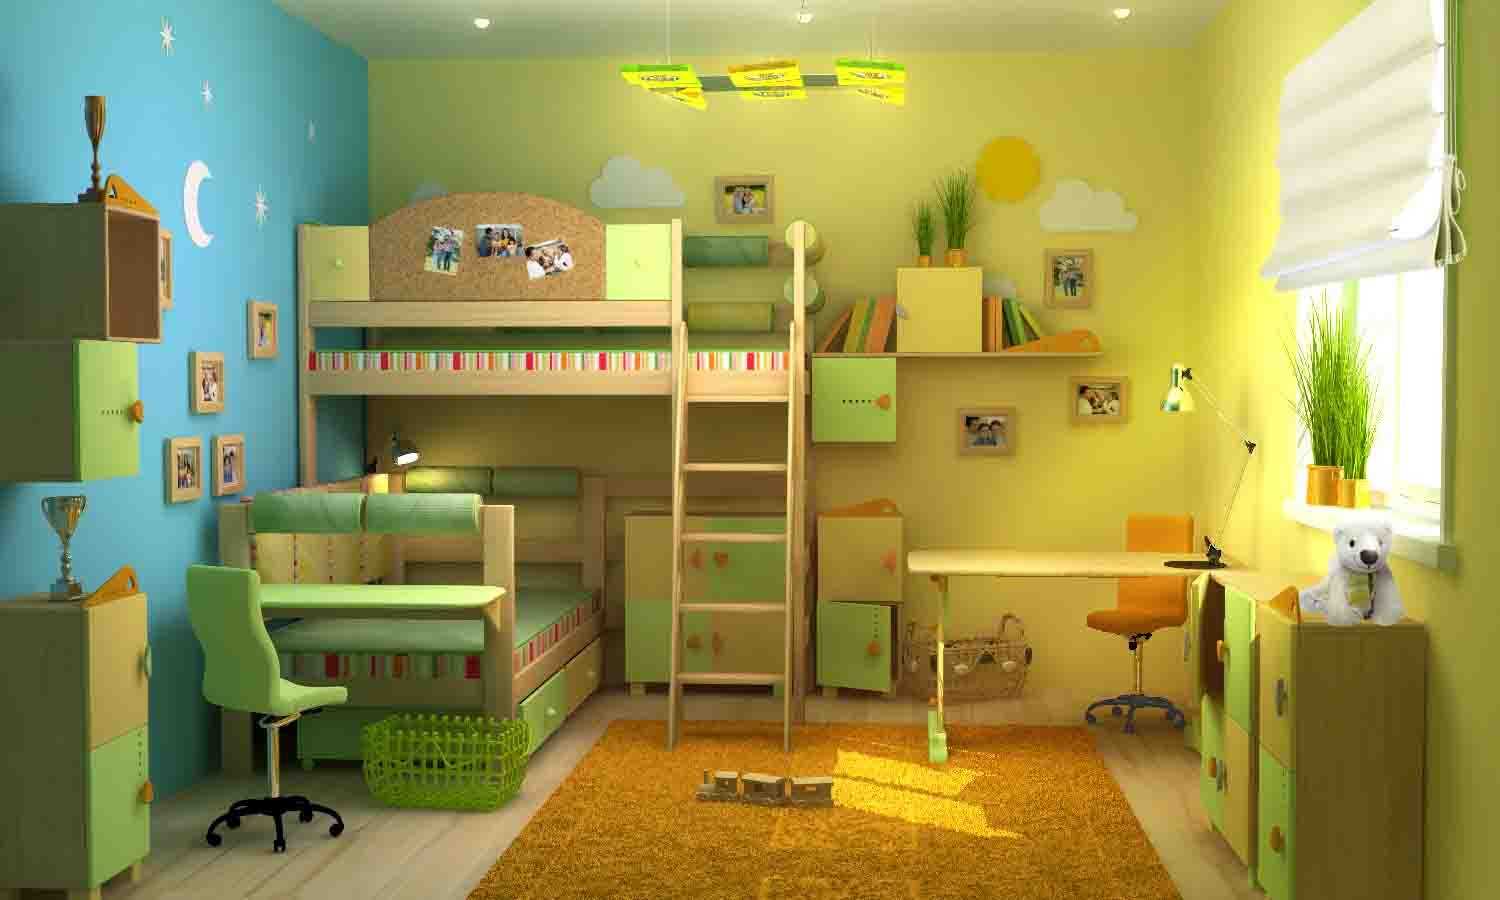 Особенности дизайна комнаты для детей разного пола